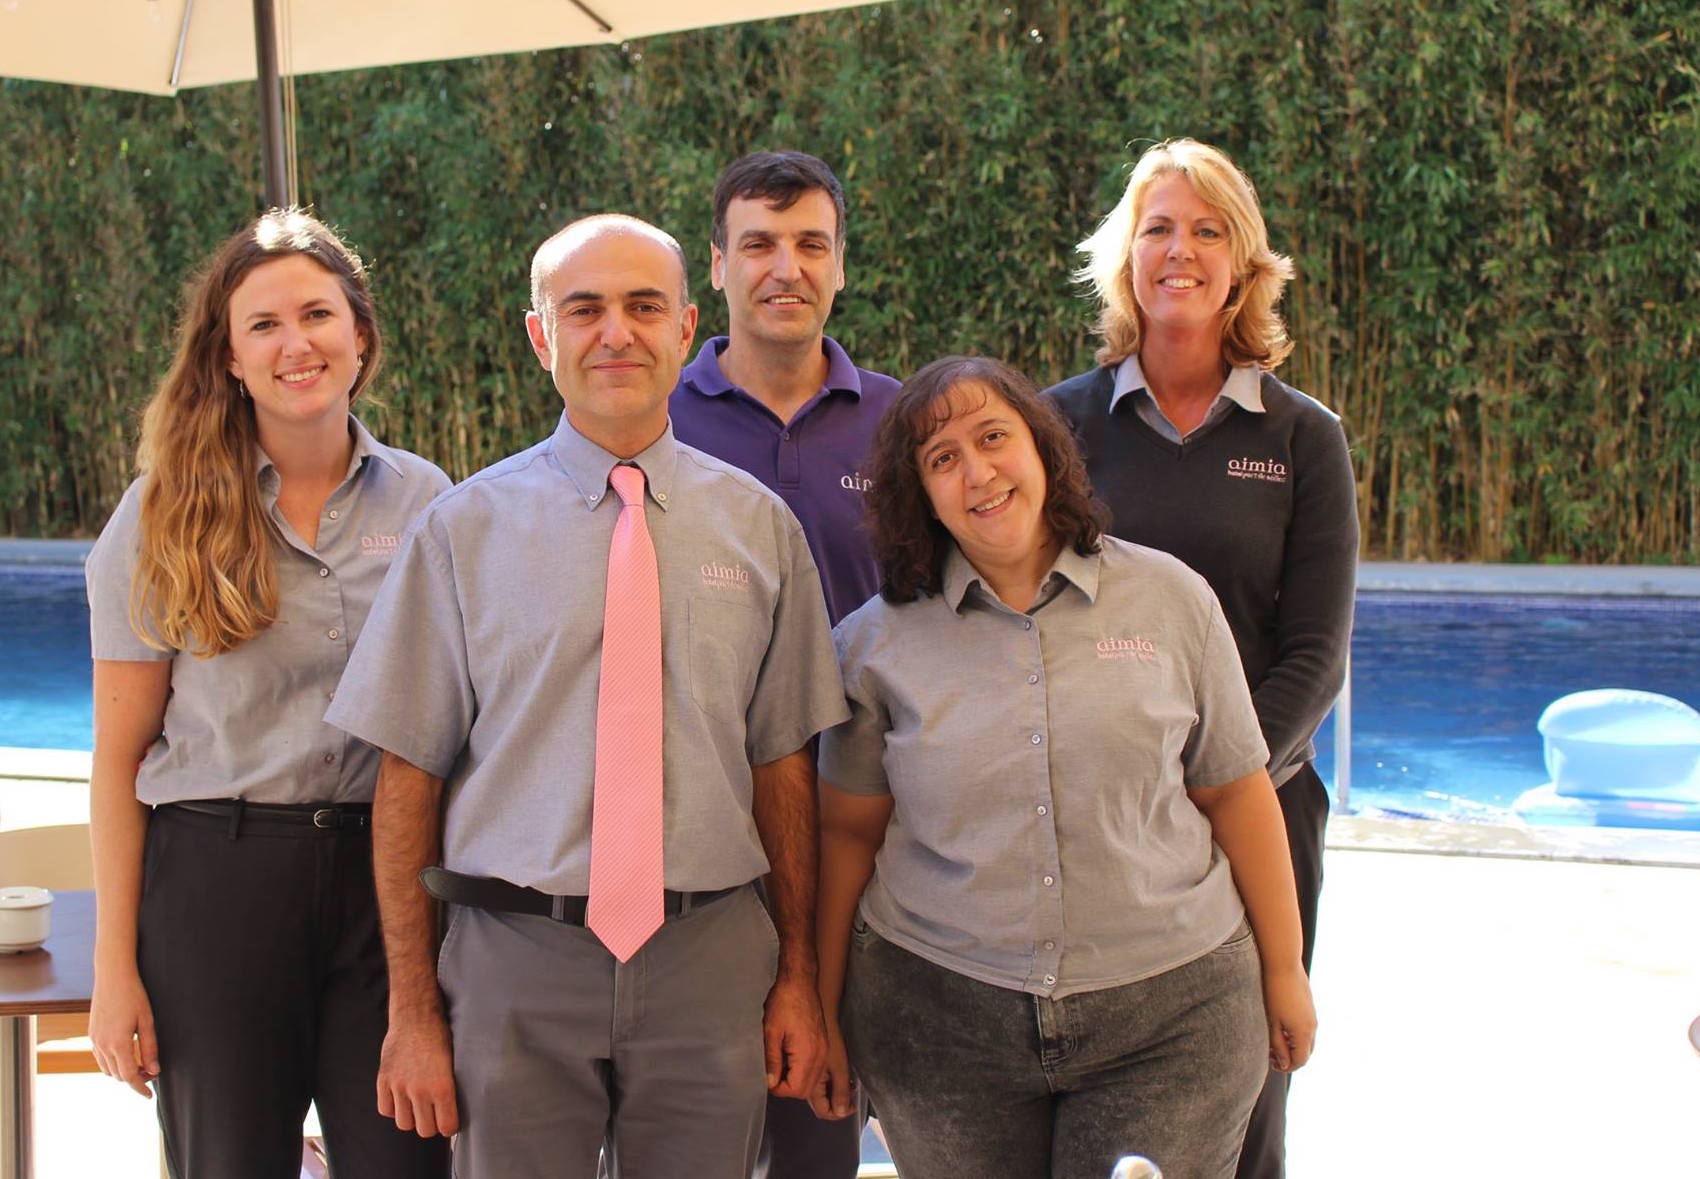 The staff team - Aimia Hotel - Port Soller - Mallorca 